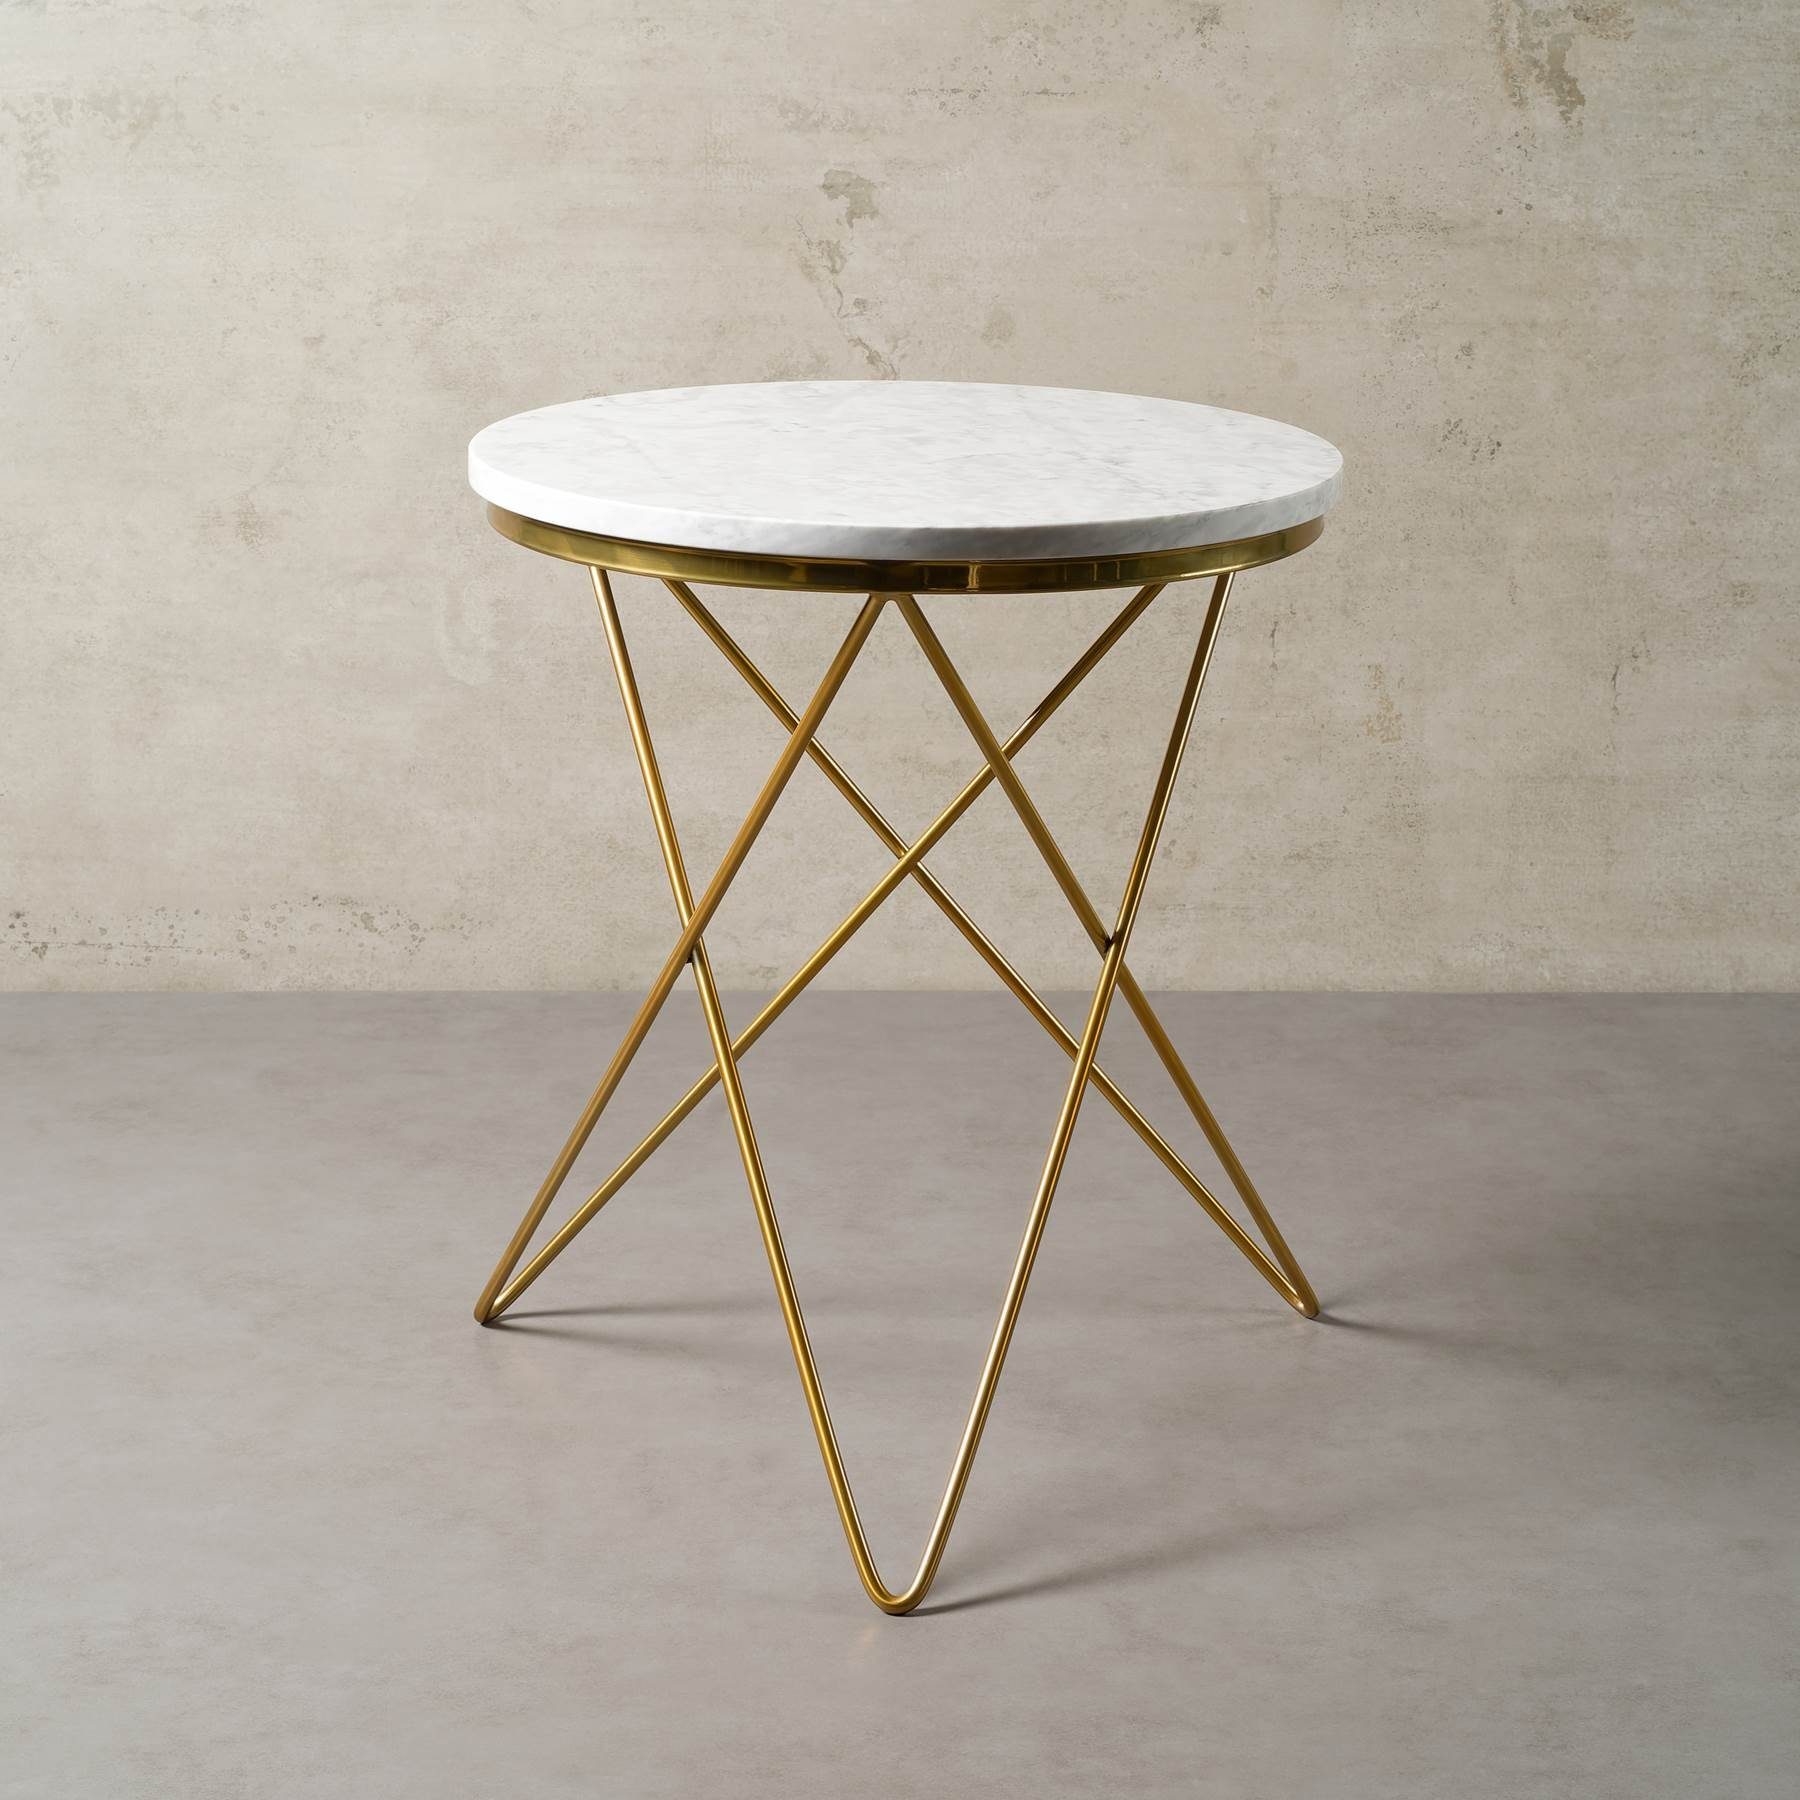 MAGNA Atelier Beistelltisch PARIS mit ECHTEM MARMOR, Beistelltisch rund, gold Metallgestell, Ø52x66cm Bianco Carrara